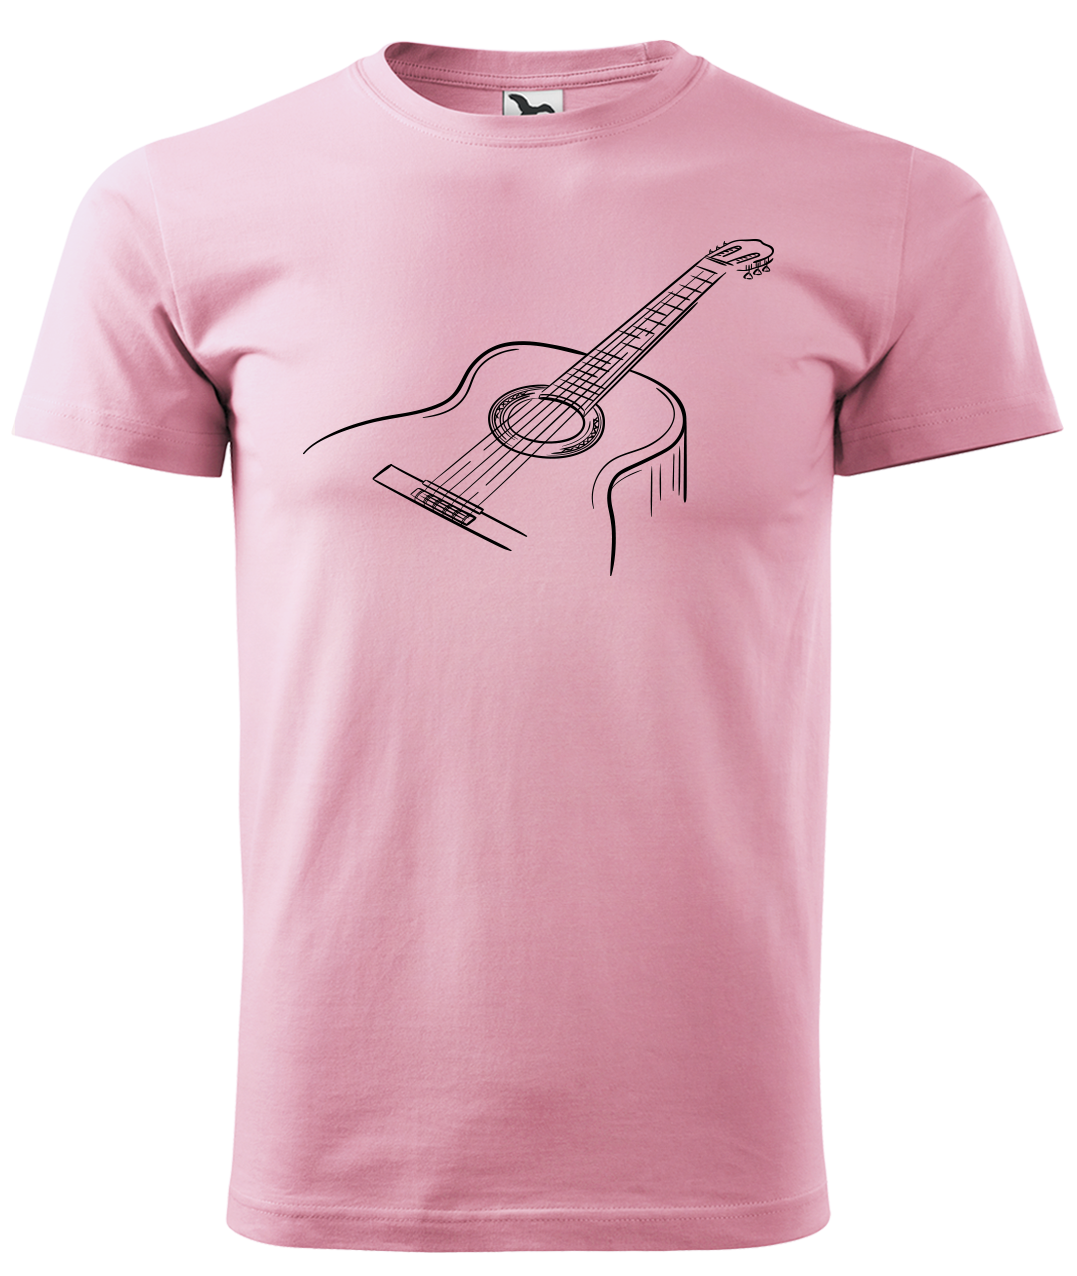 Dětské tričko s kytarou - Klasická kytara Velikost: 10 let / 146 cm, Barva: Růžová (30)